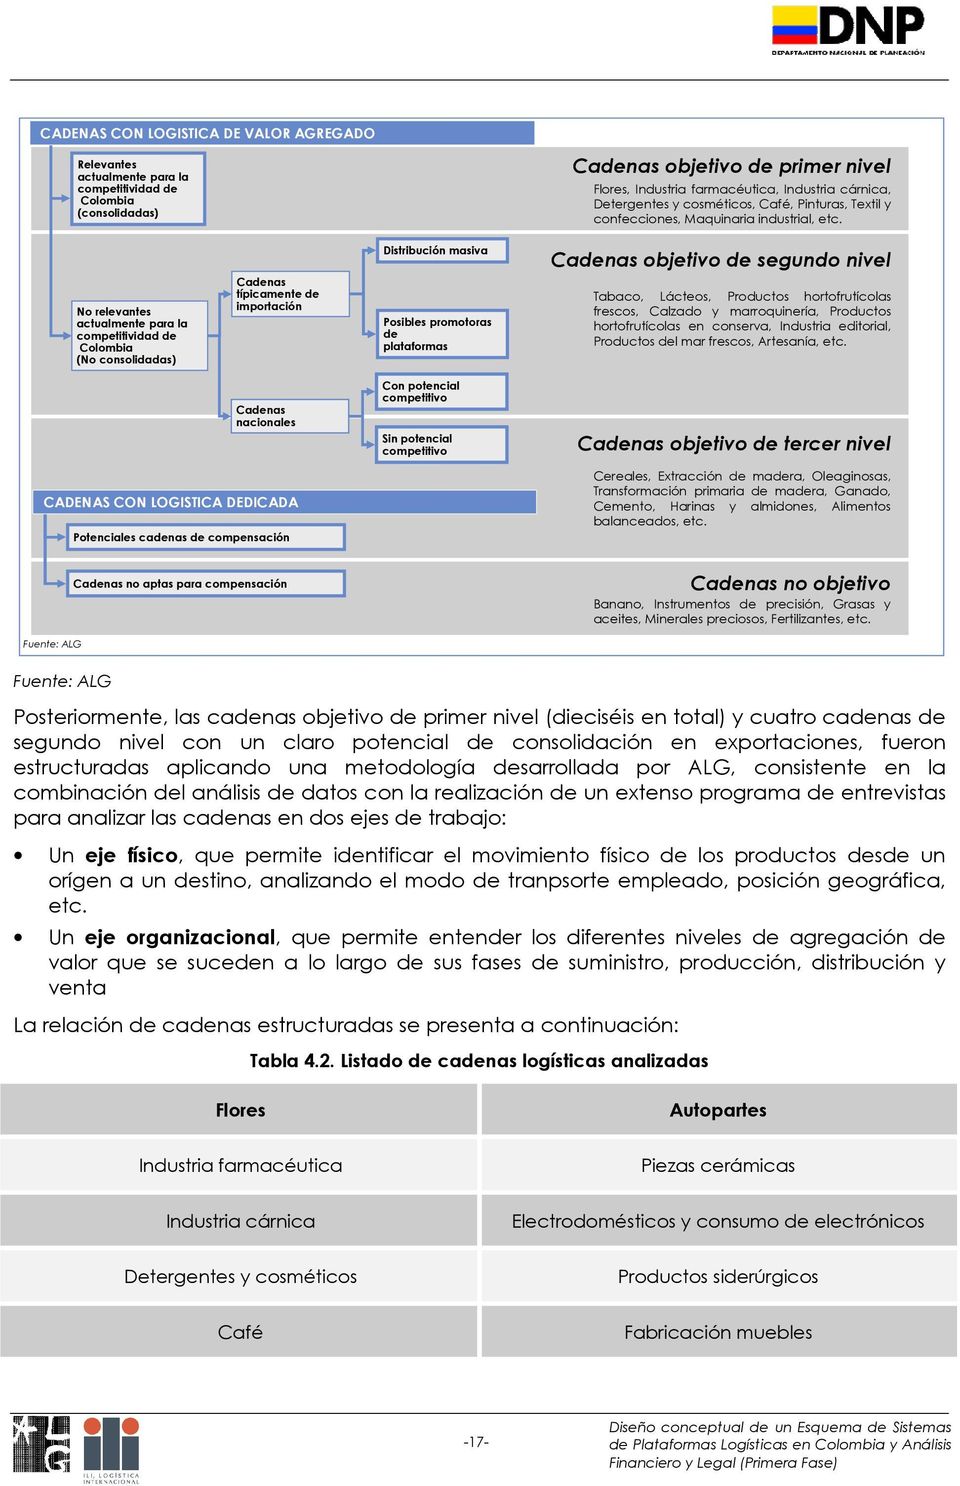 No relevantes actualmente para la competitividad de Colombia (No consolidadas) Cadenas típicamente de importación Distribución masiva Posibles promotoras de plataformas Cadenas objetivo de segundo